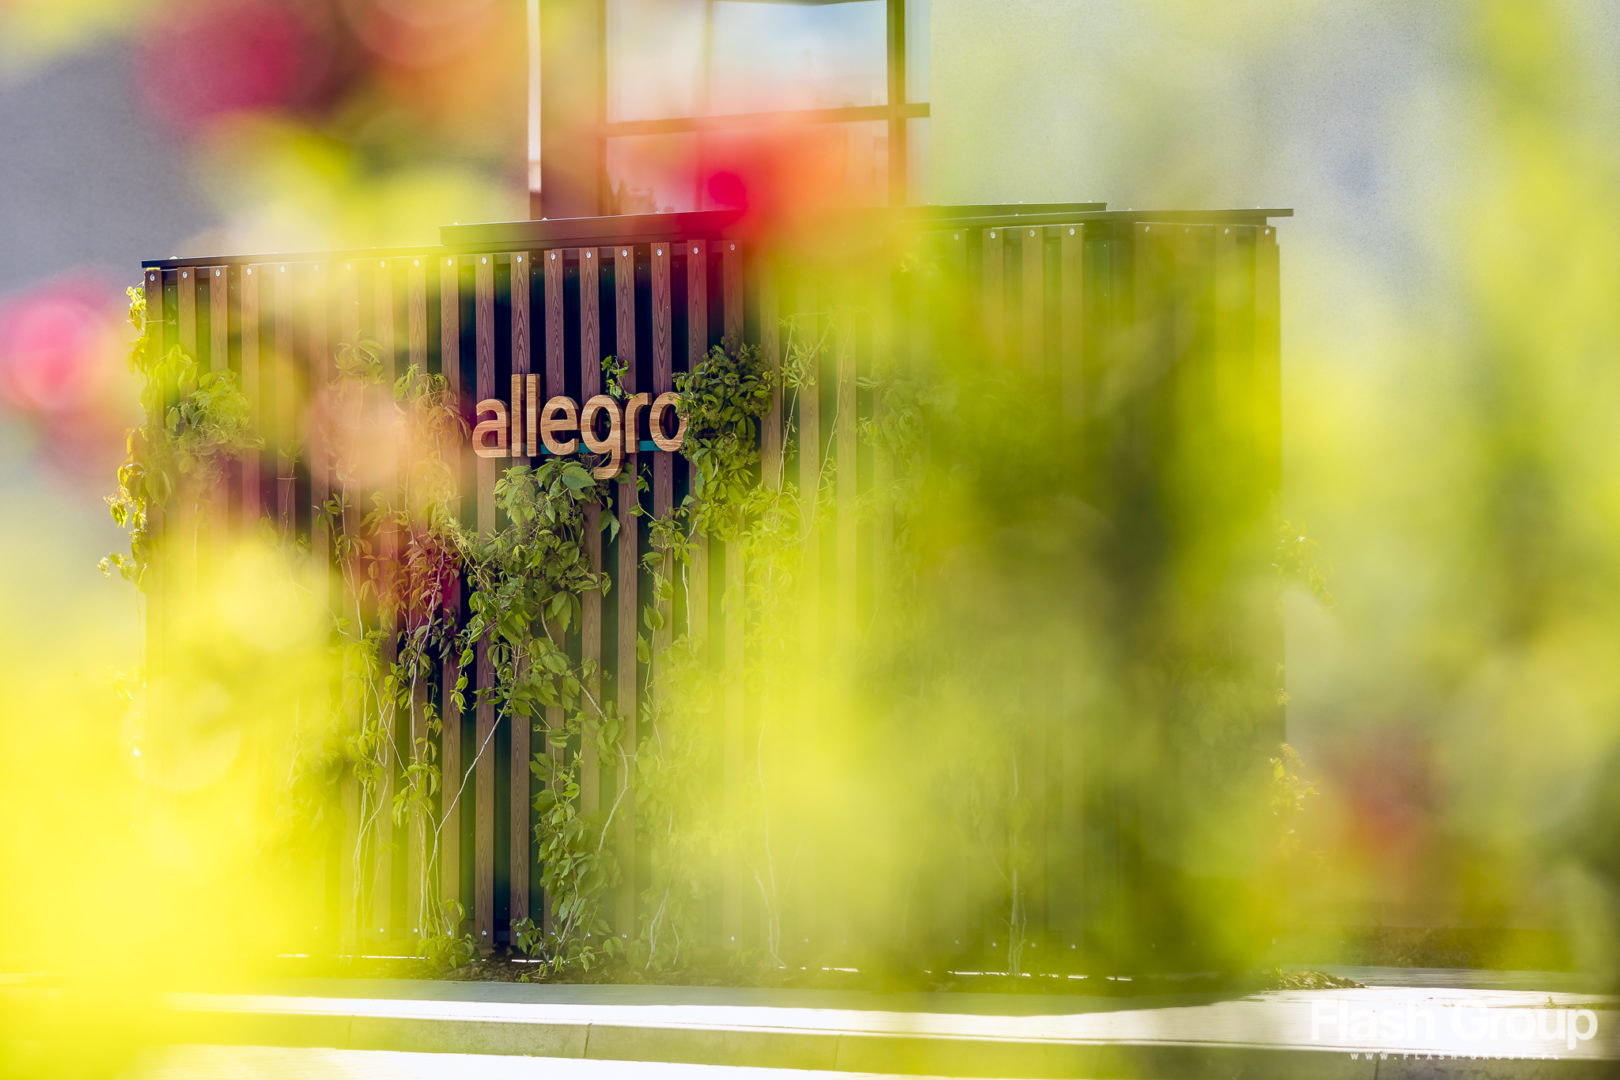 Fotografia reklamowa | Zielone automaty paczkowe Allegro